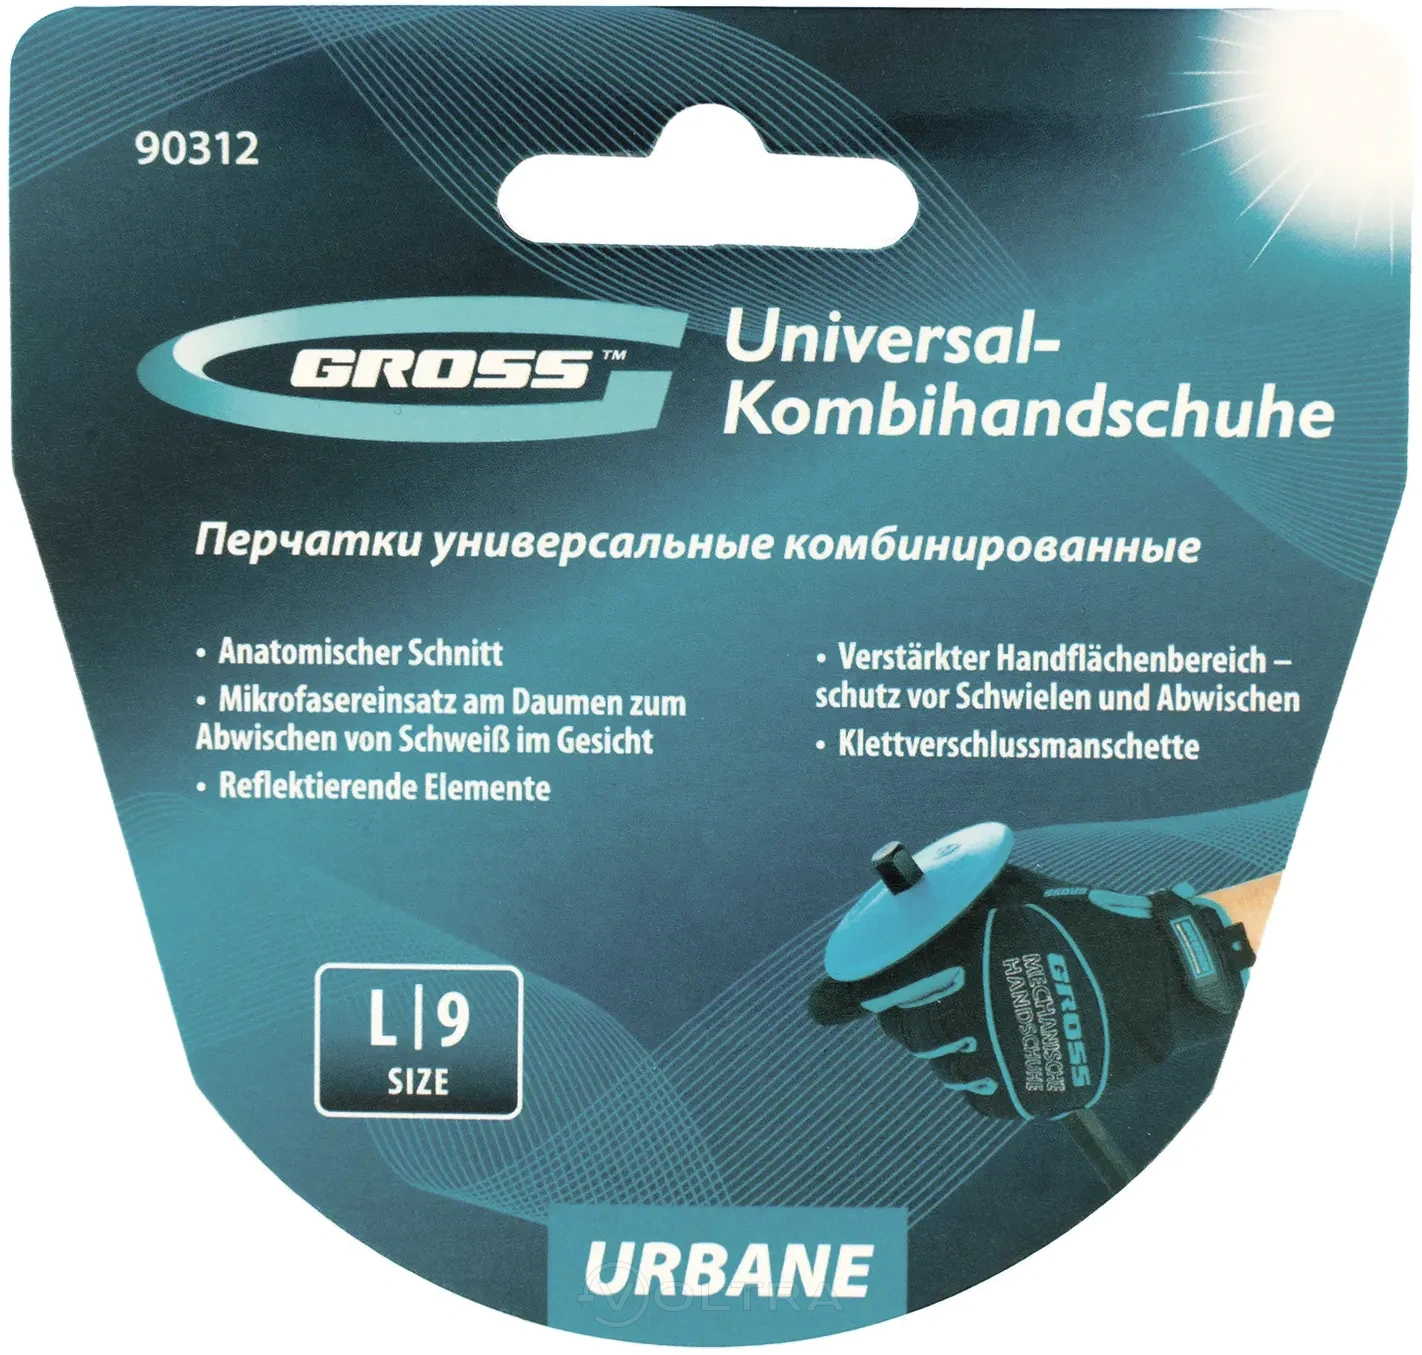 Перчатки универсальные комбинированные URBANE размер L (9) Gross (90312)